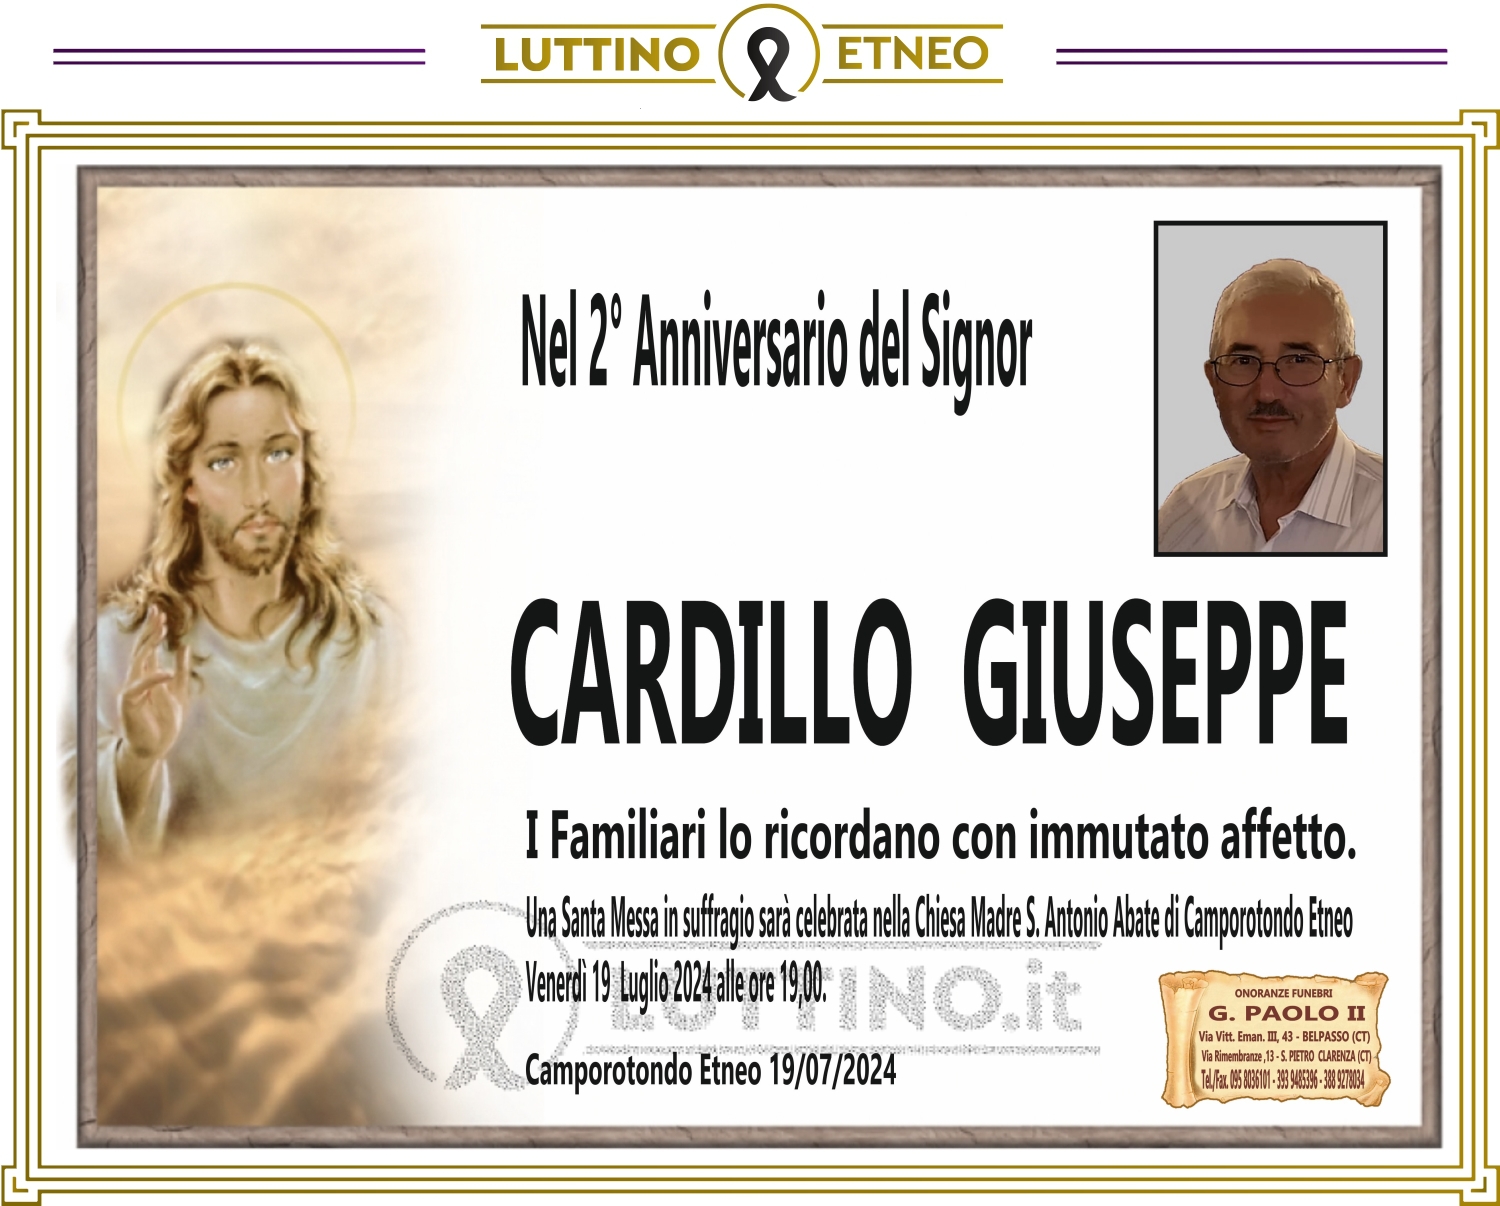 Giuseppe Cardillo